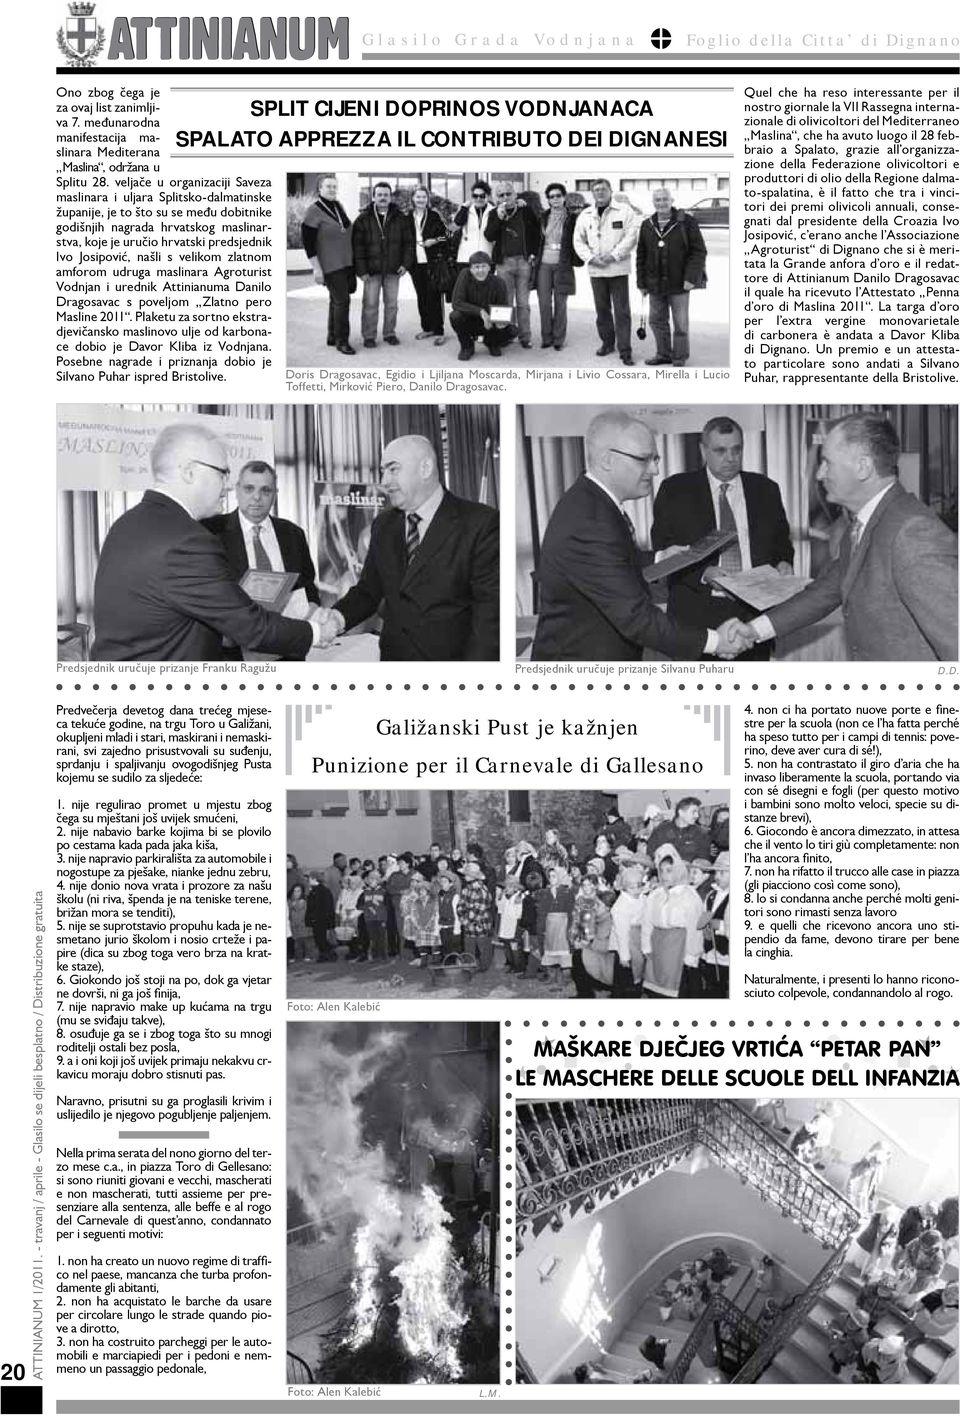 Josipović, našli s velikom zlatnom amforom udruga maslinara Agroturist Vodnjan i urednik Attinianuma Danilo Dragosavac s poveljom Zlatno pero Masline 2011.